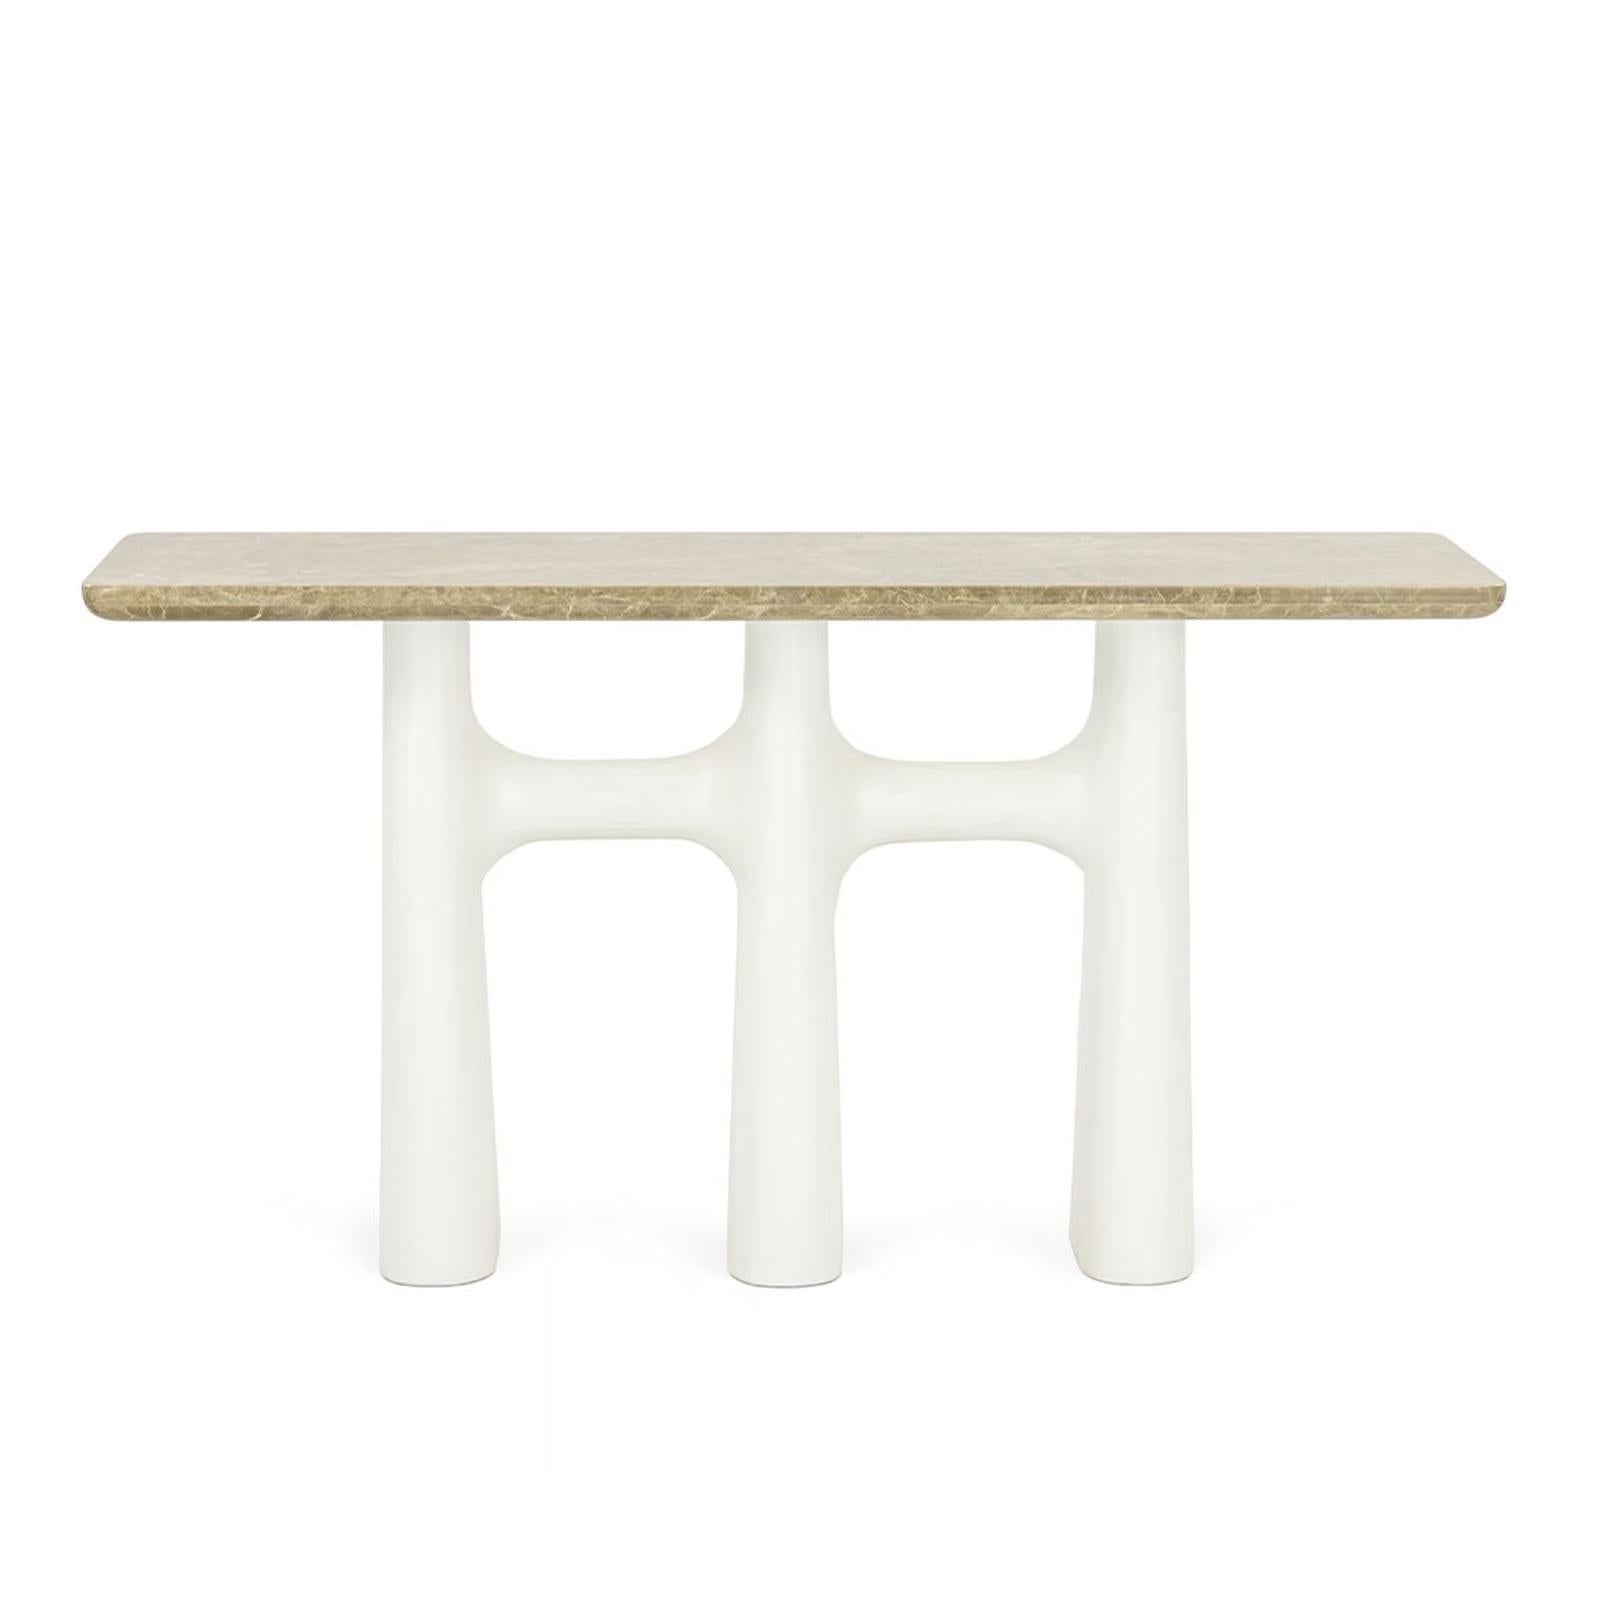 Diese elegante Konsole hat eine Tischplatte aus Marmor mit braunen, cremefarbenen und goldenen Adern. Die Tischplatte ruht auf drei organisch geformten, cremeweißen Gipsbeinen mit einer leicht strukturierten Oberfläche. Die Beine wölben sich unten